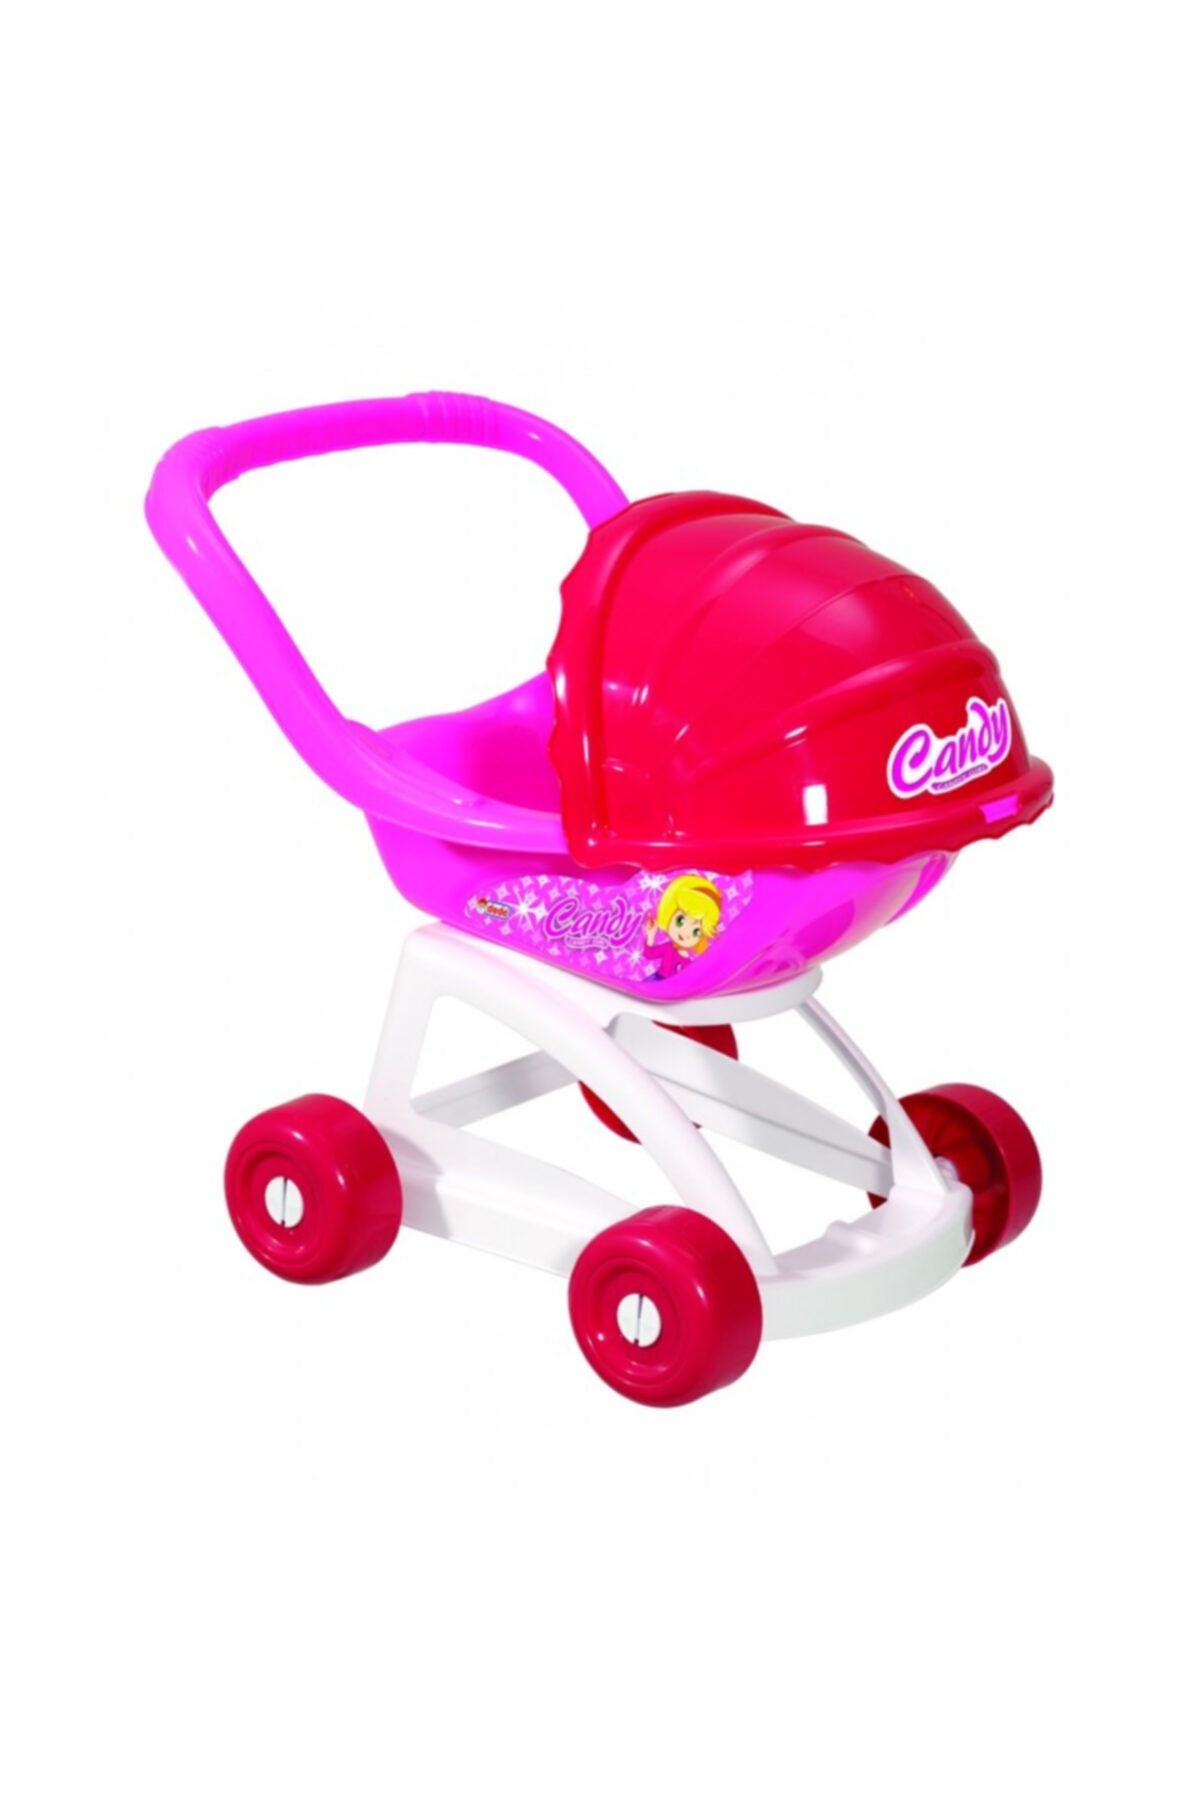 DEDE 01370 Candy Tenteli Bebek Arabası Oyuncak